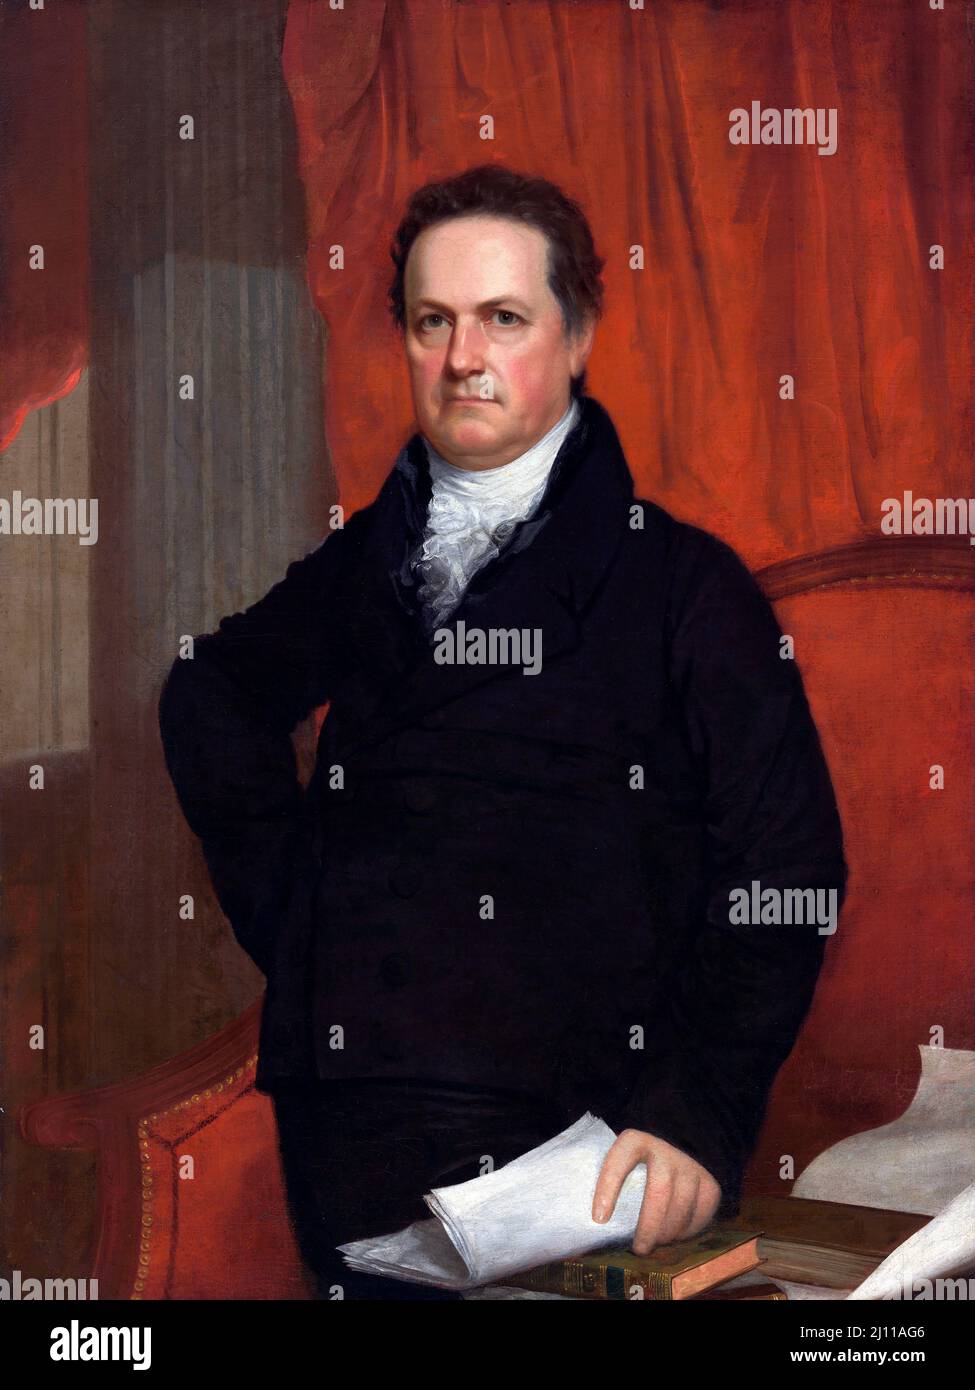 Porträt des amerikanischen Politikers DeWitt Clinton (1769-1828) von john Wesley Jarvis, Öl auf Leinwand, c. 1816 Stockfoto